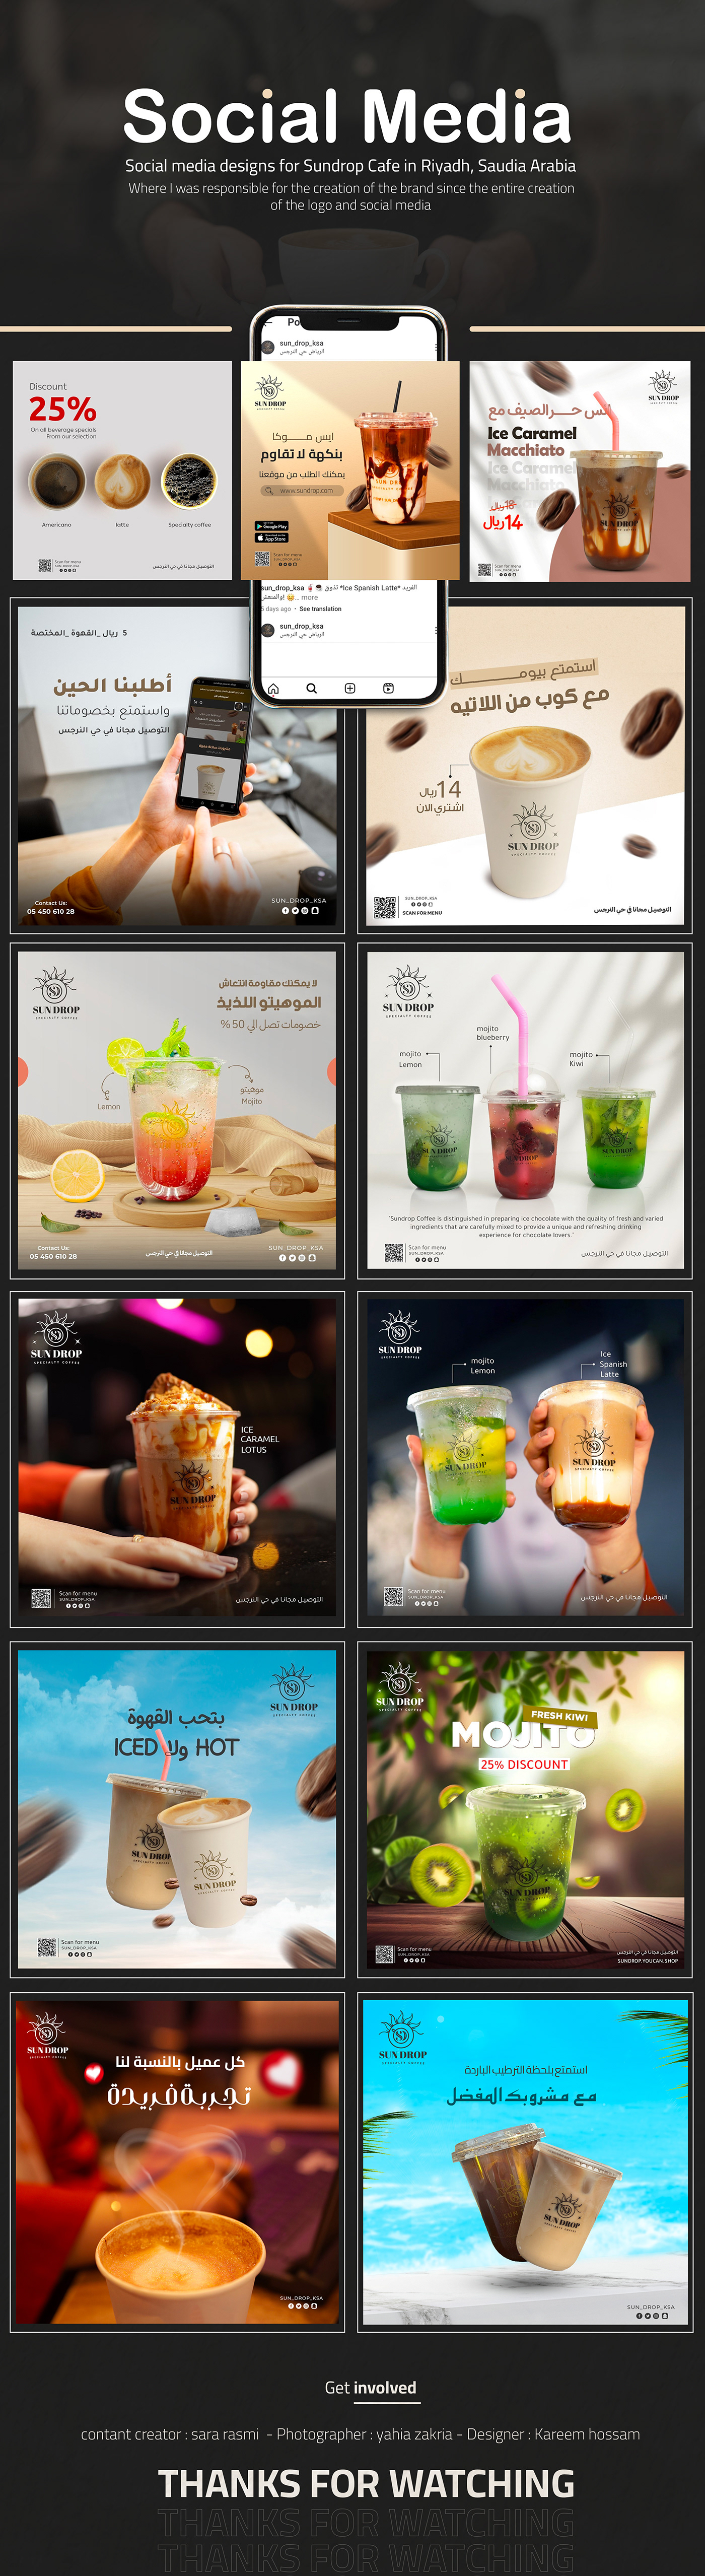 riyadh Saudi Arabia caffe social mdia post ads marketing  